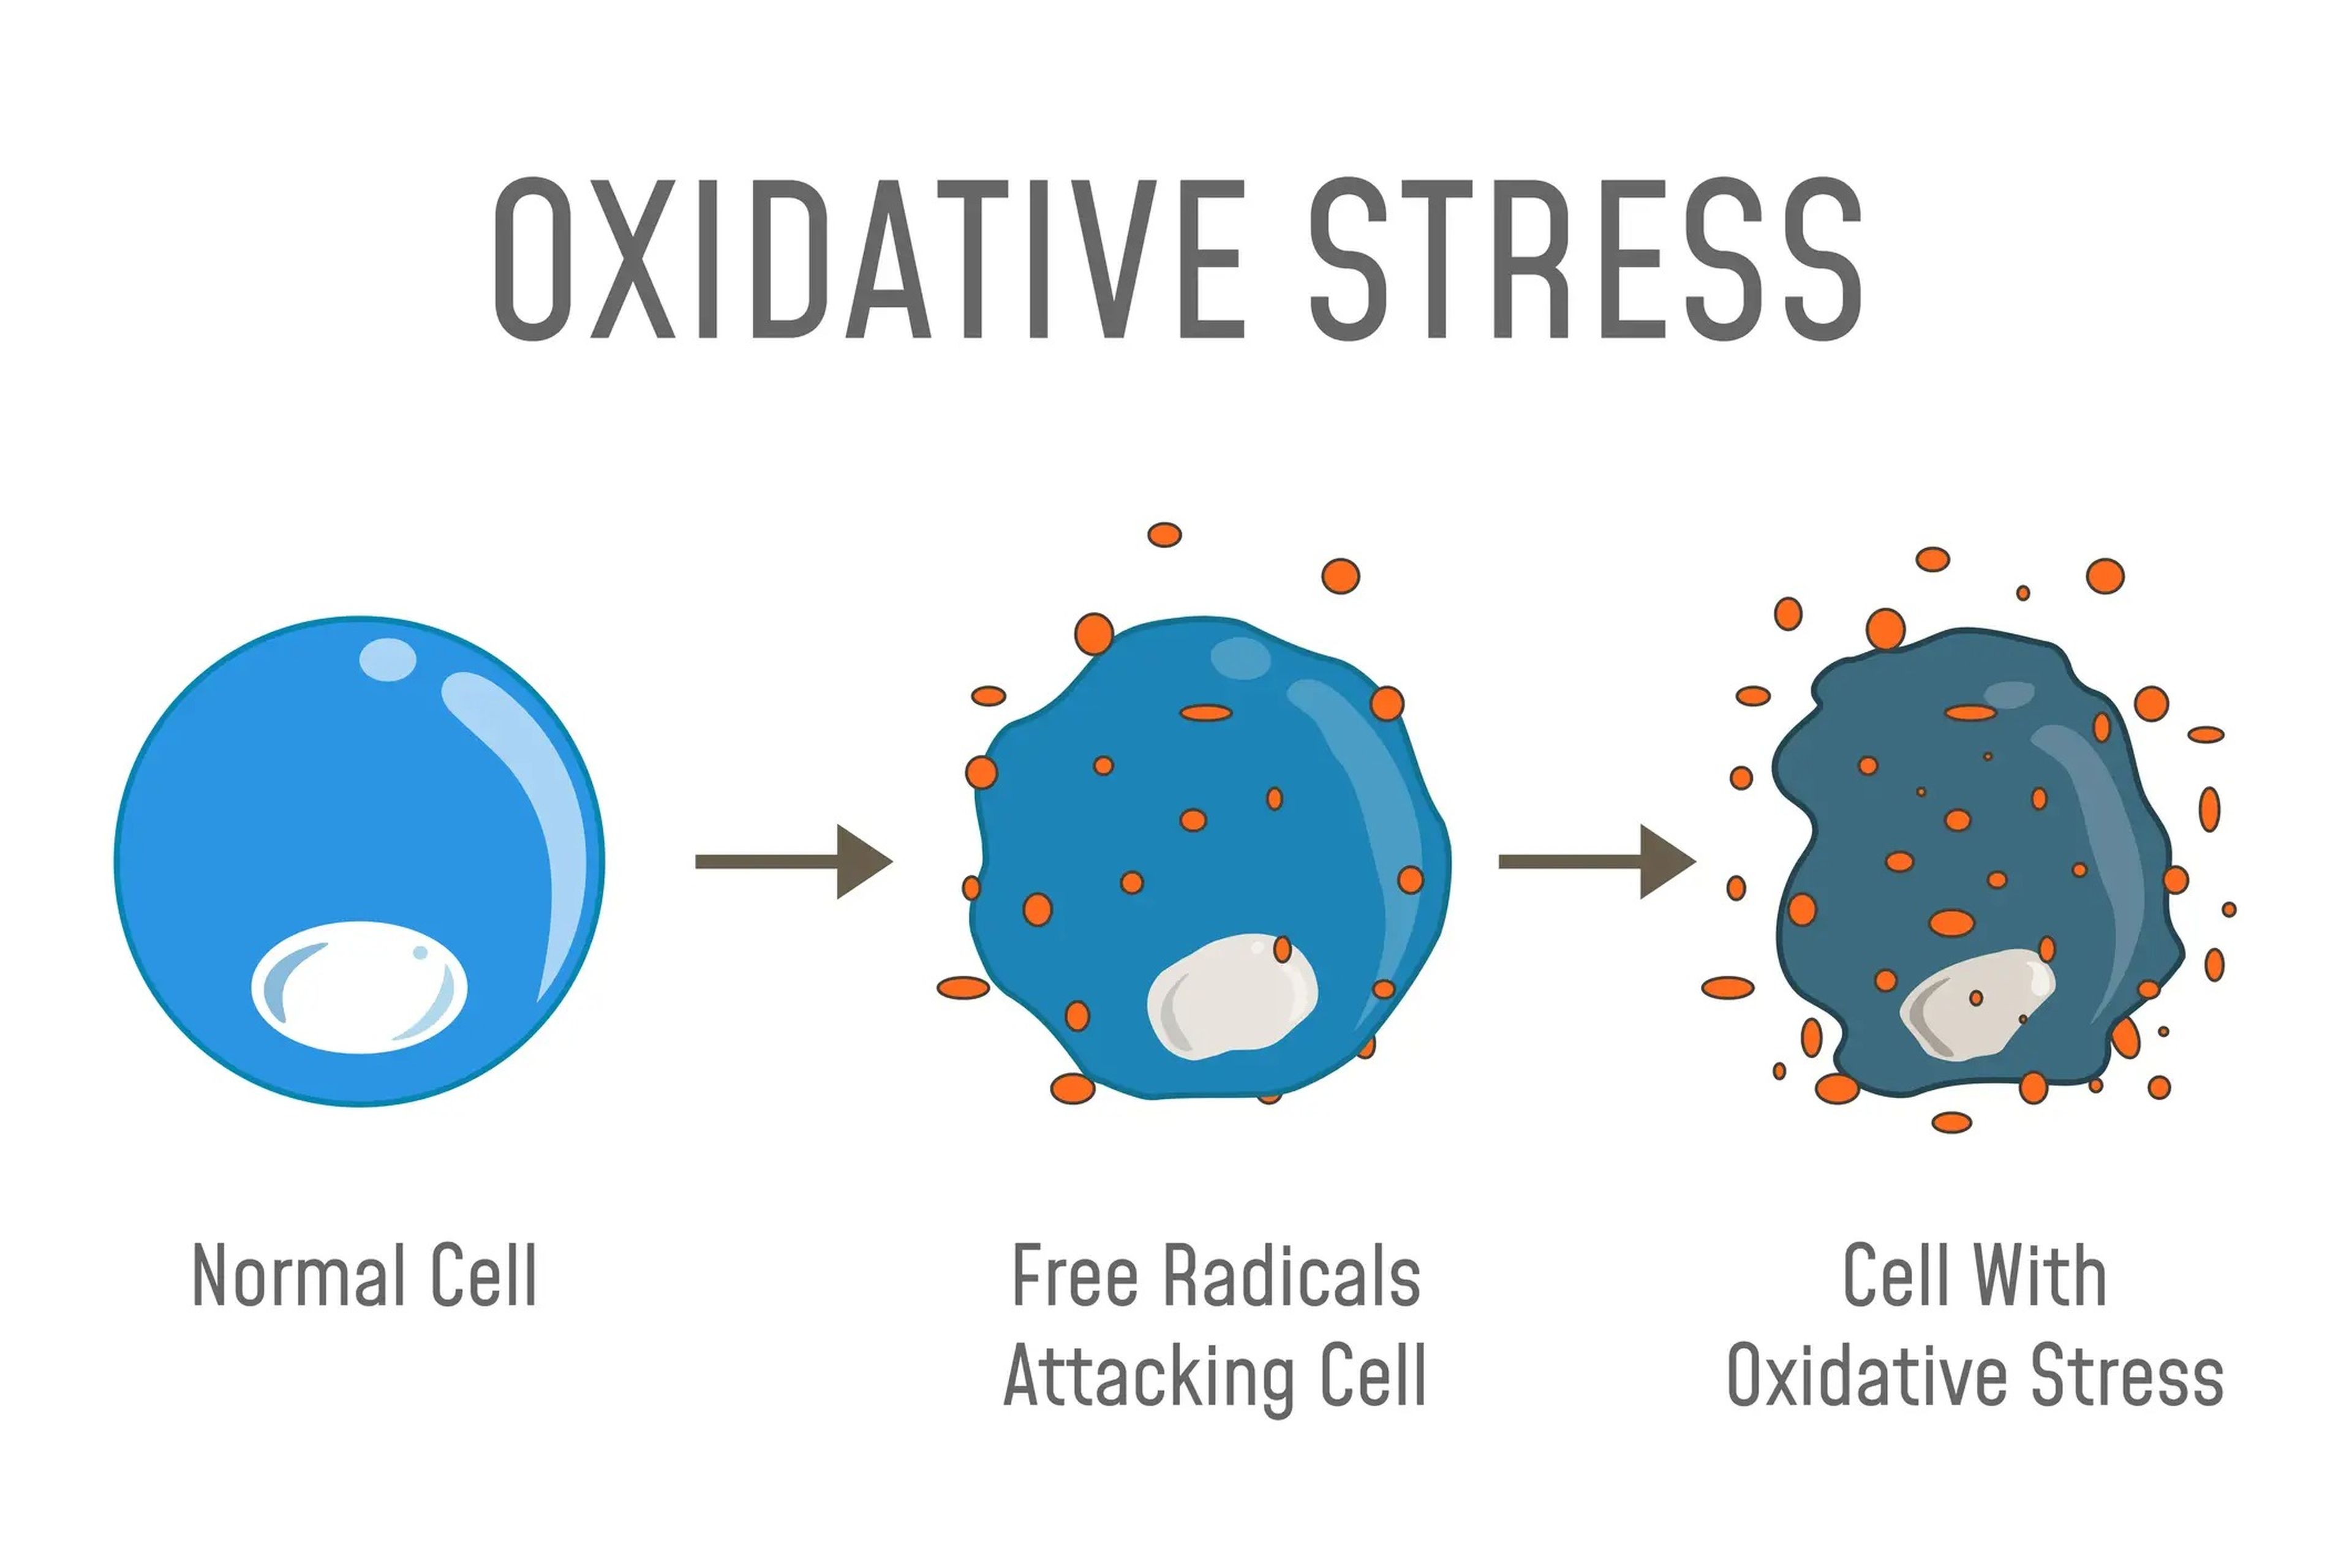 Los radicales libres provocan estrés oxidativo, que está relacionado con ciertas enfermedades asociadas a la edad.